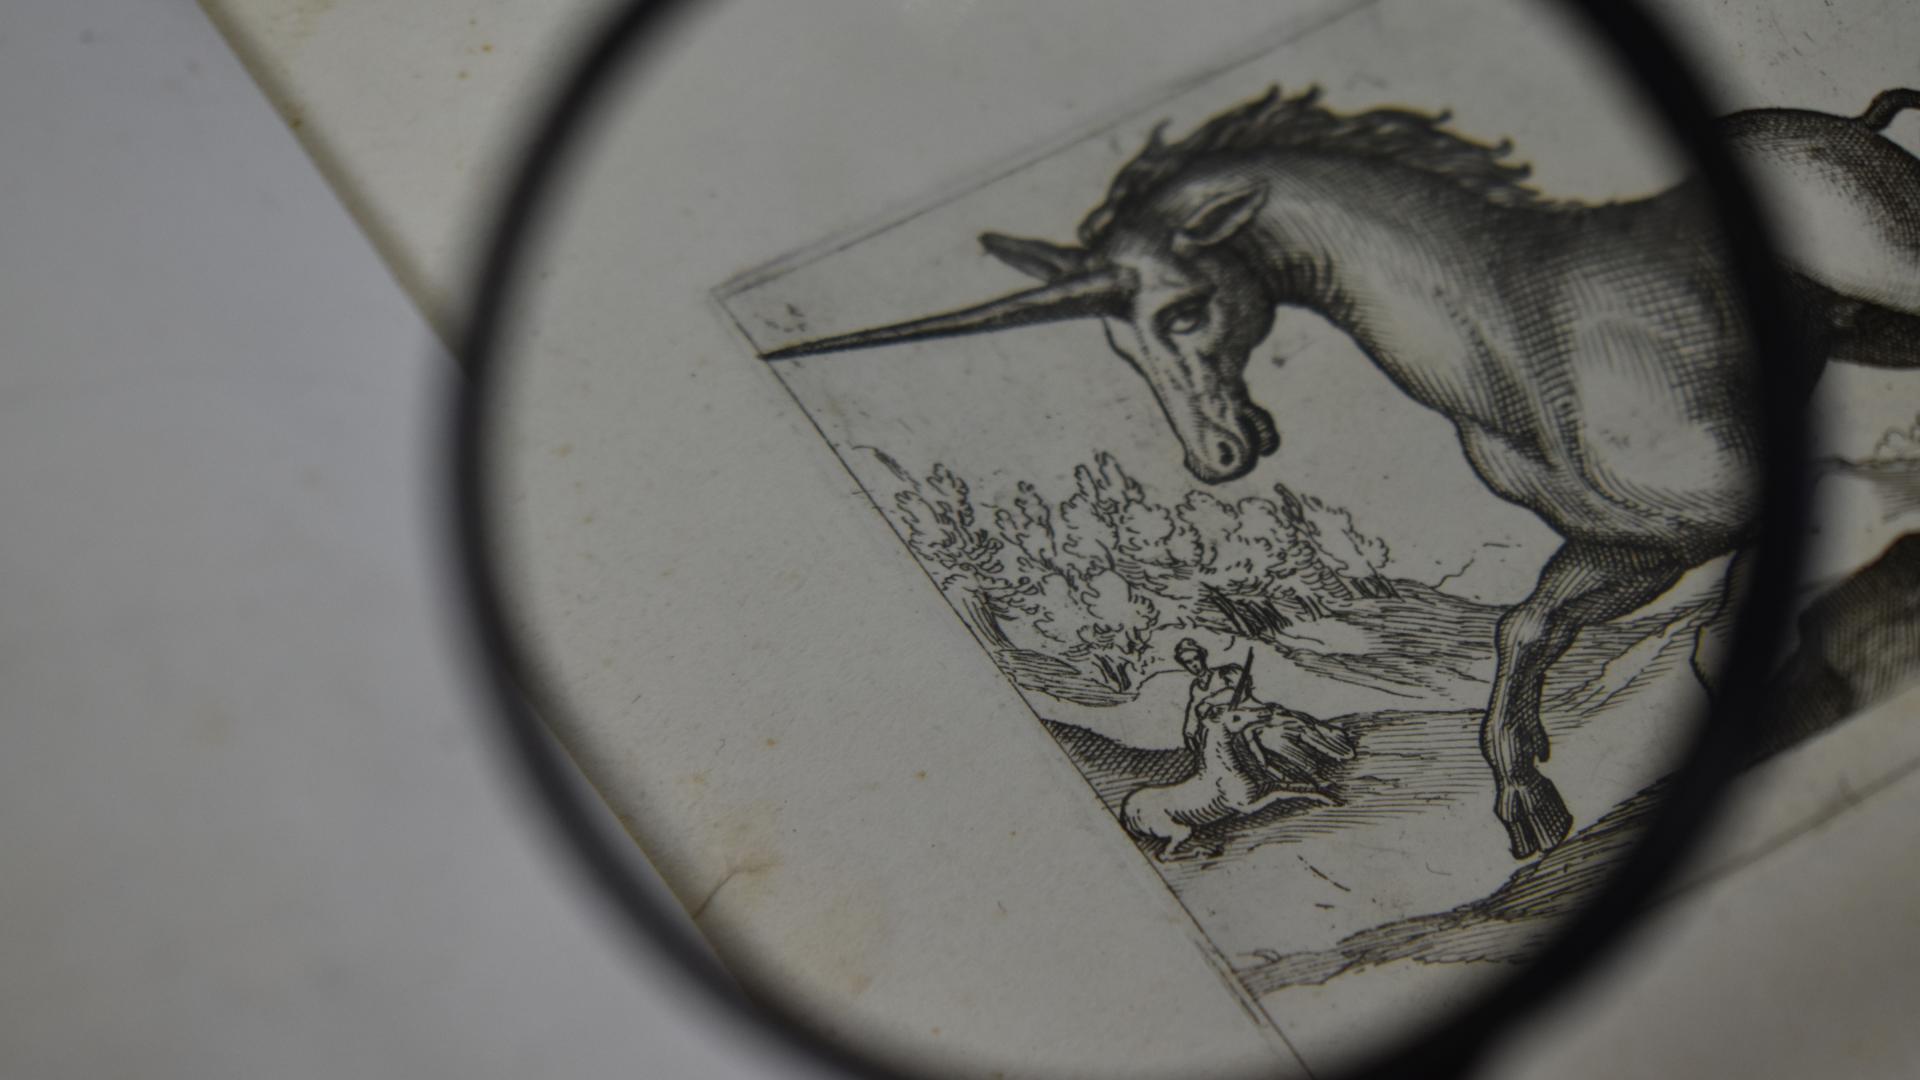 Detalle de una estampa del libro de Antonio Tempesta vista con lupa